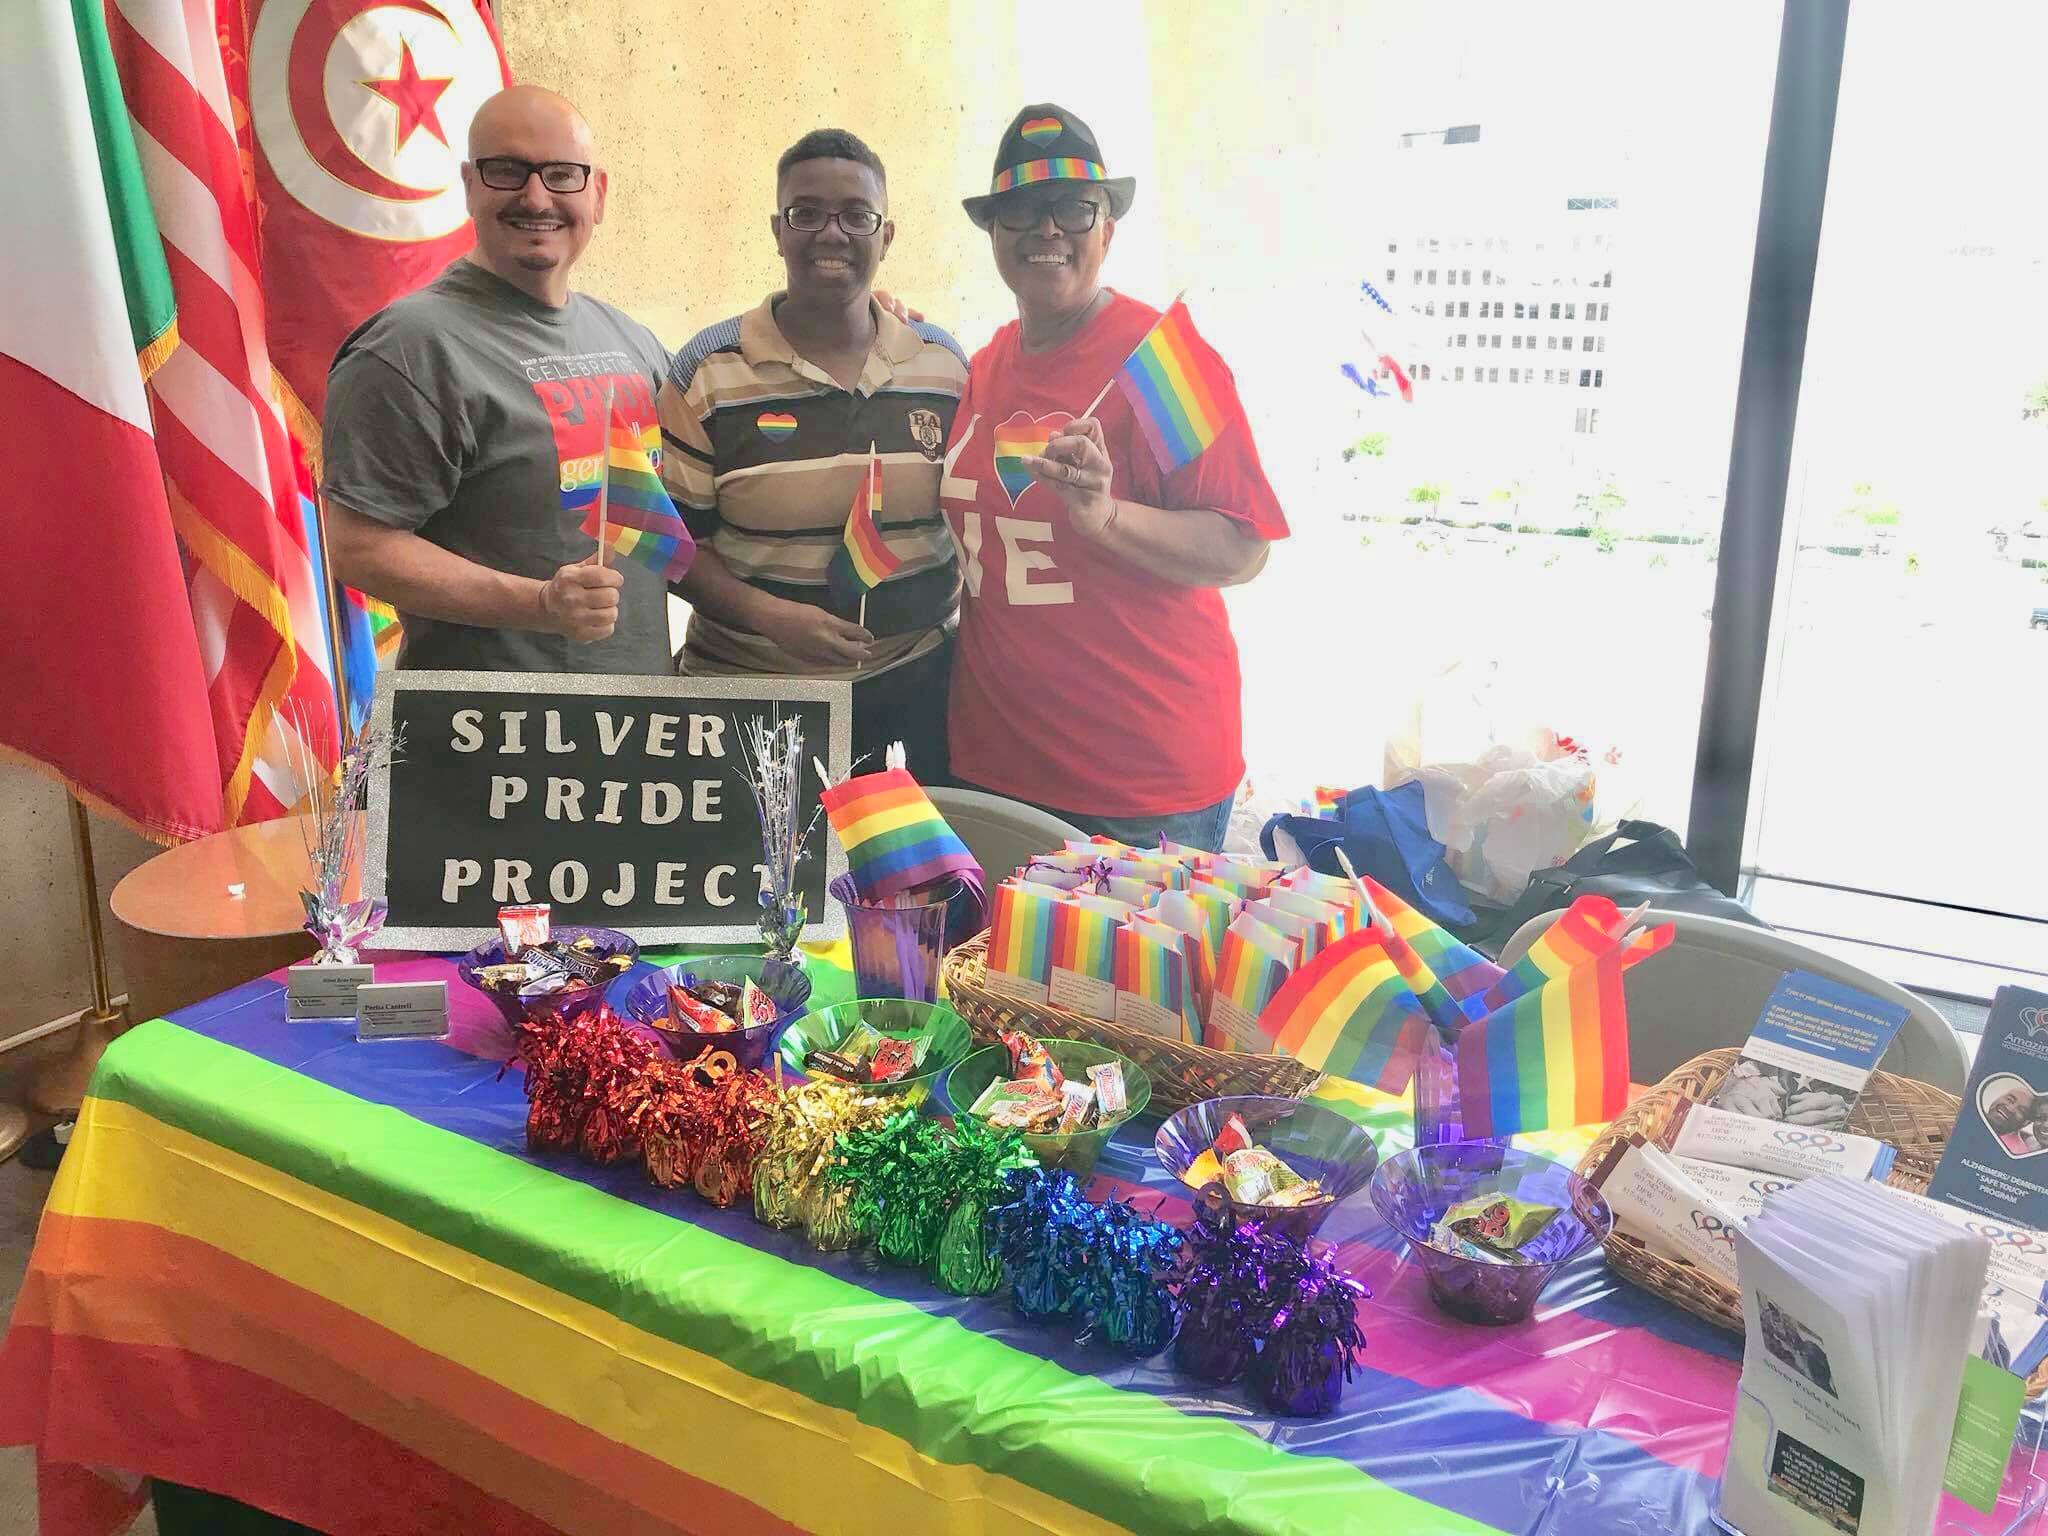  Silver Pride Project representing at Dallas City Hall 